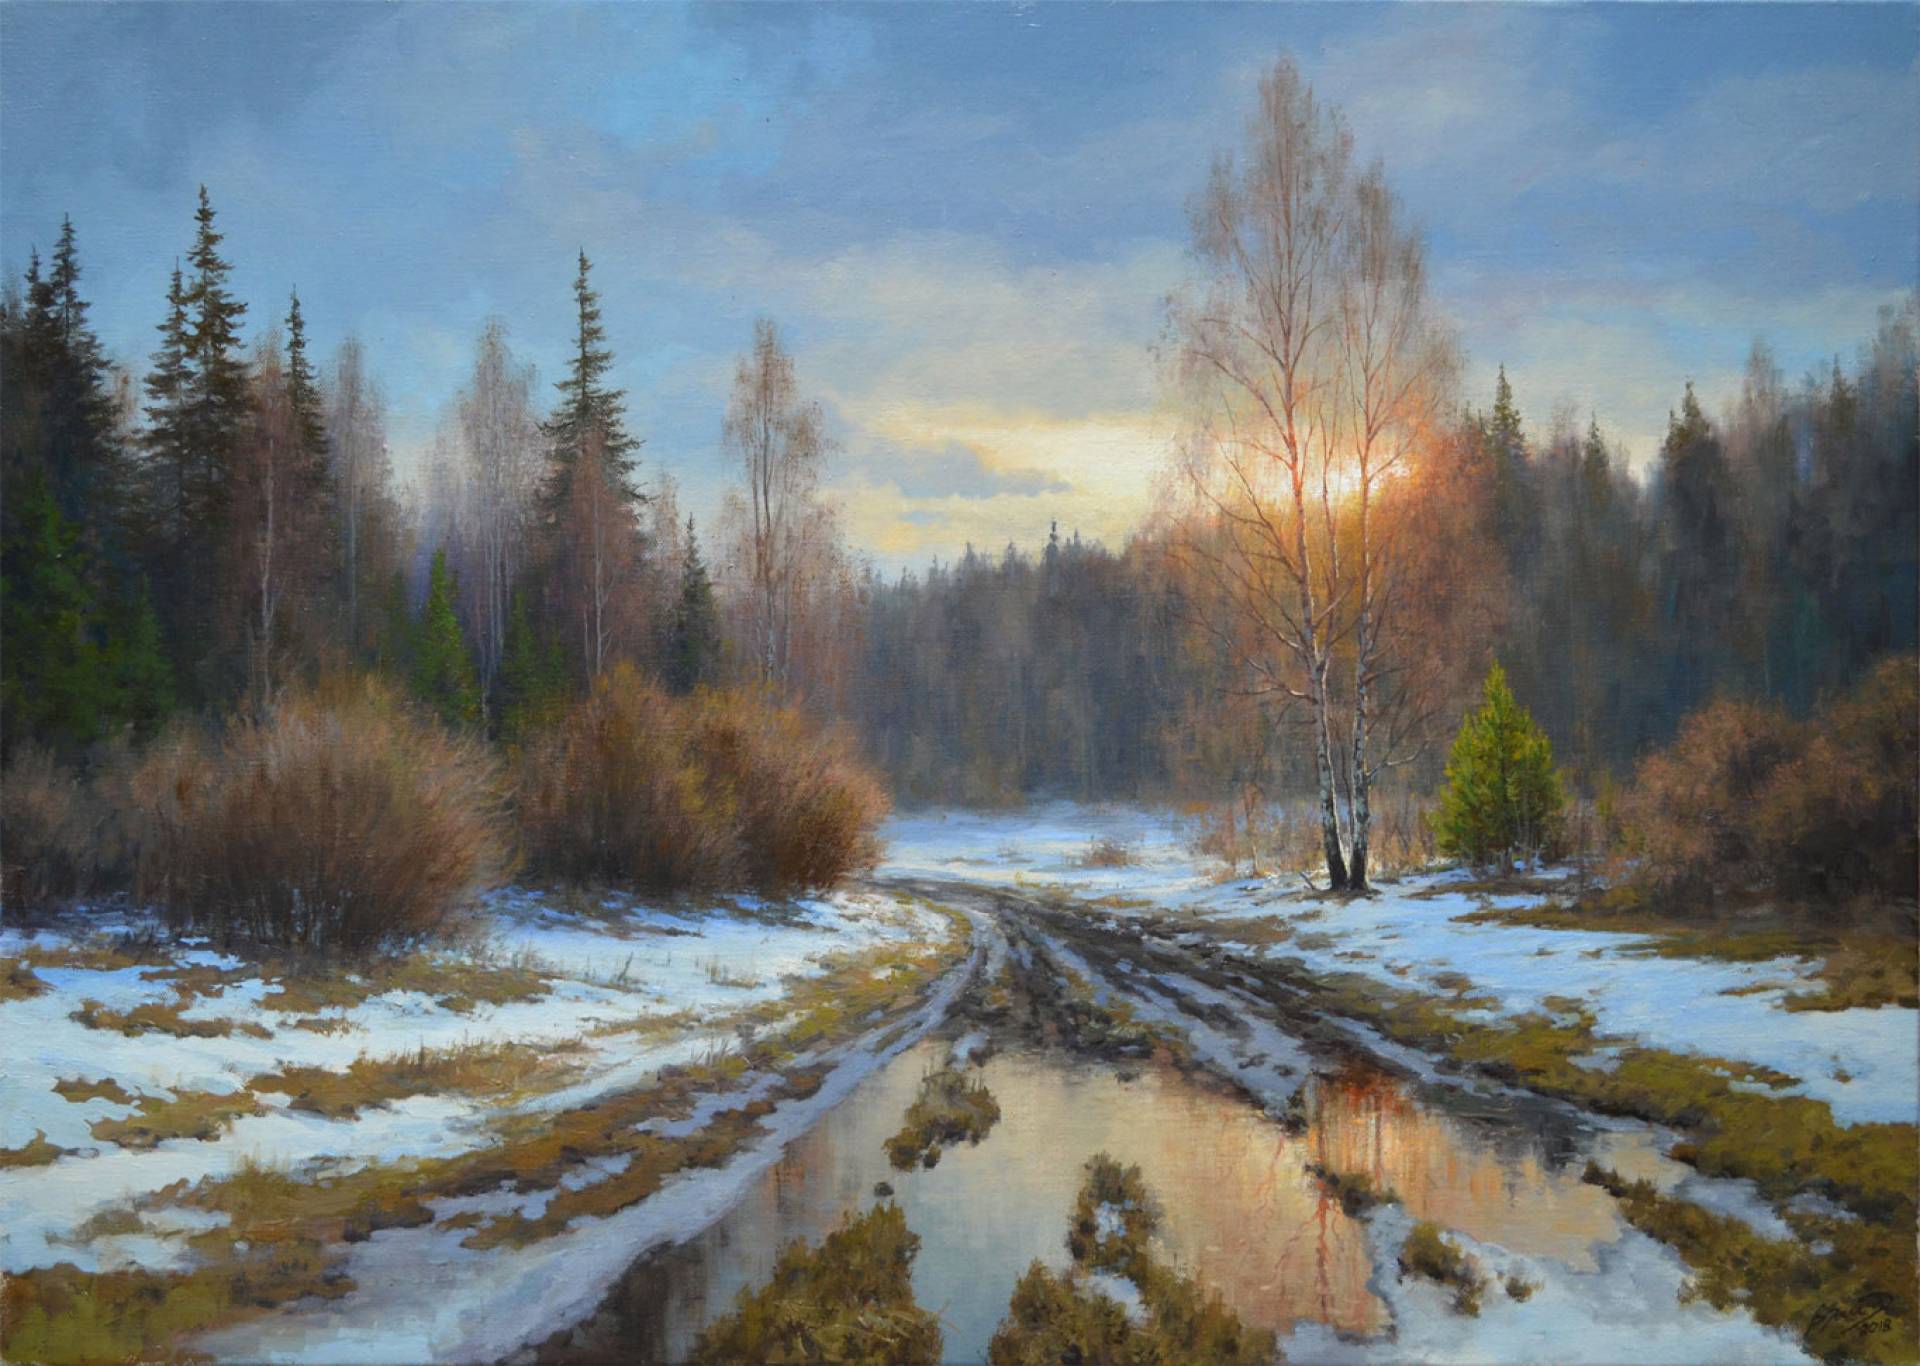 Slush - 1, Vadim Zainullin, Buy the painting Oil